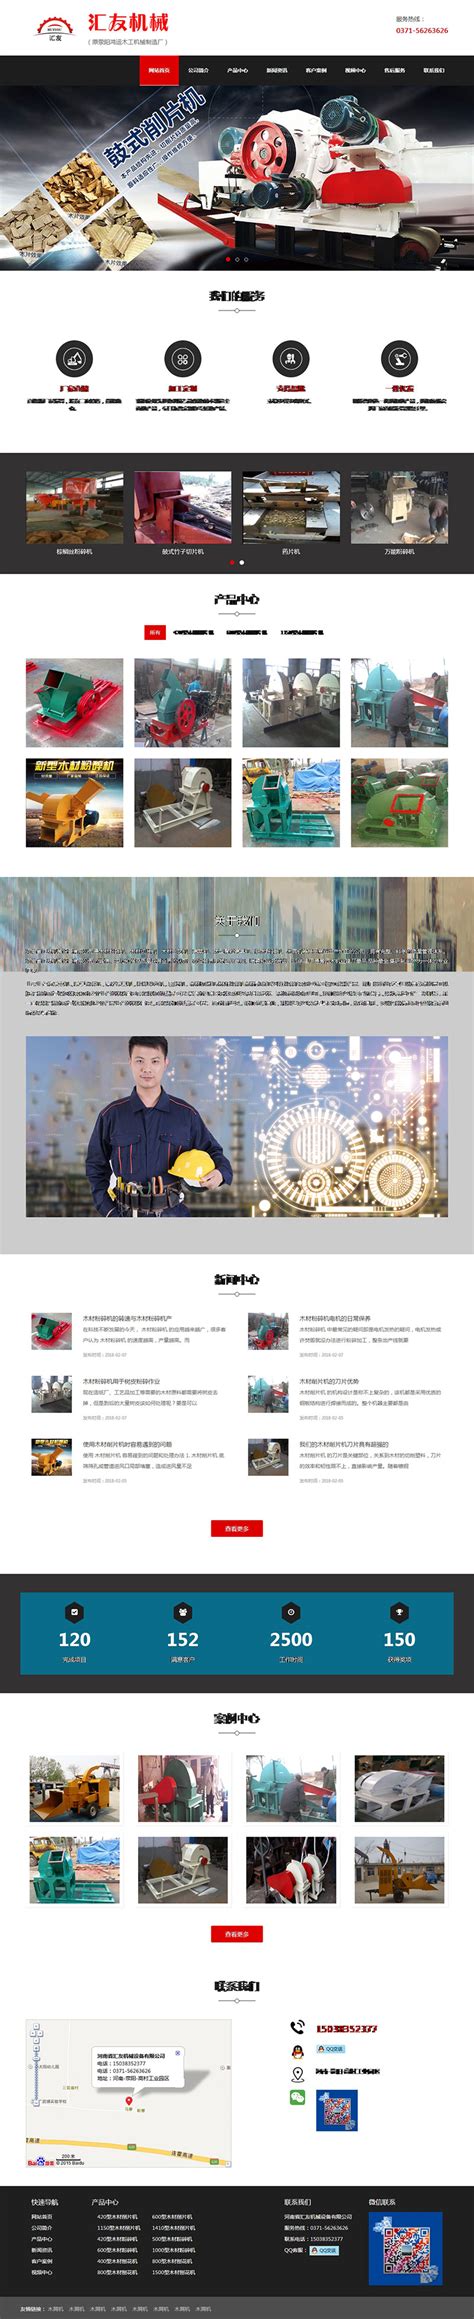 企业网站建设公司网站模板 网站设计公司模版